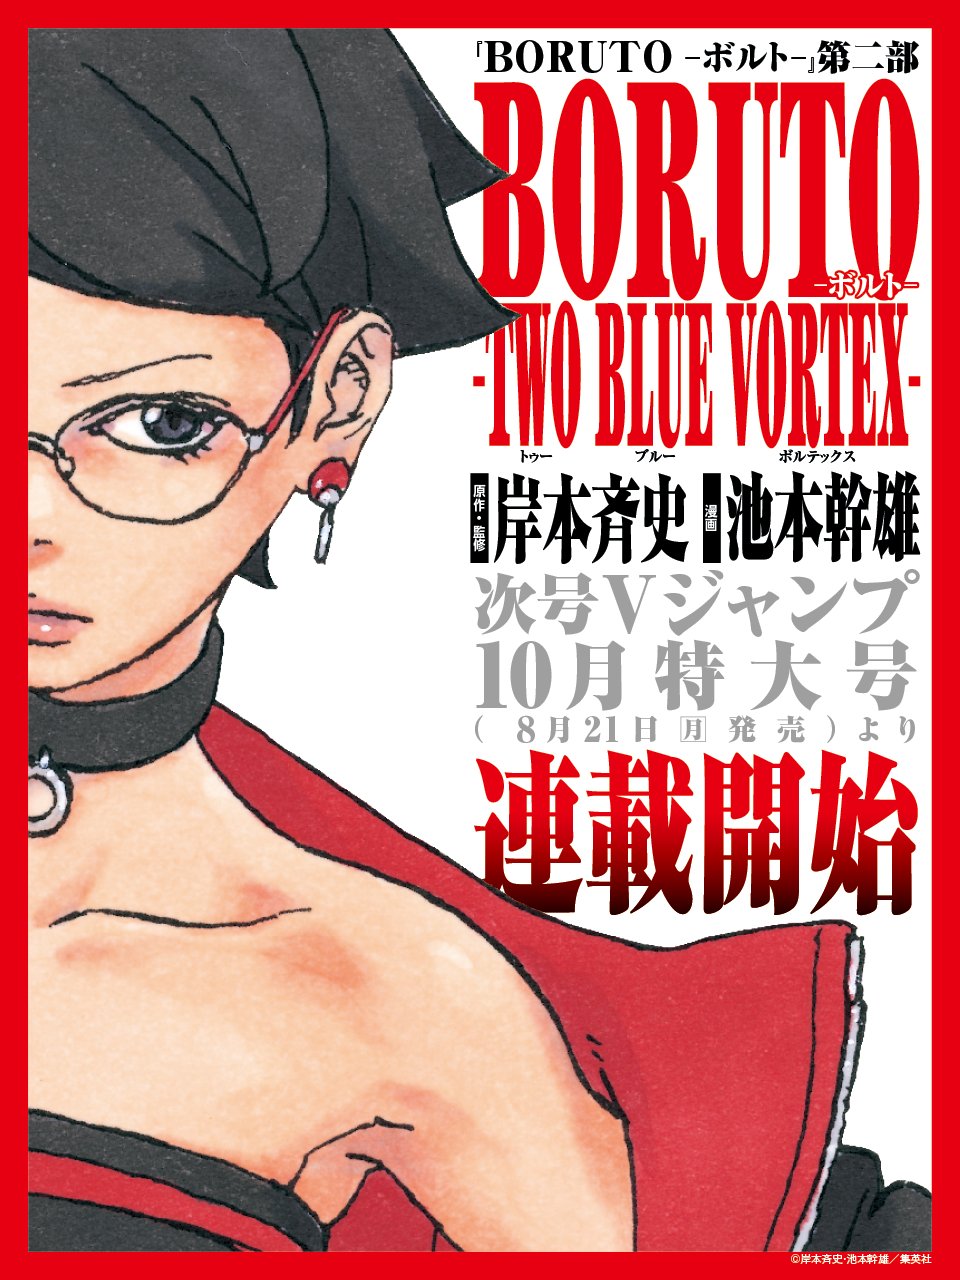 Boruto's evolution: 'Two Blue Vortex' cover reveals striking new